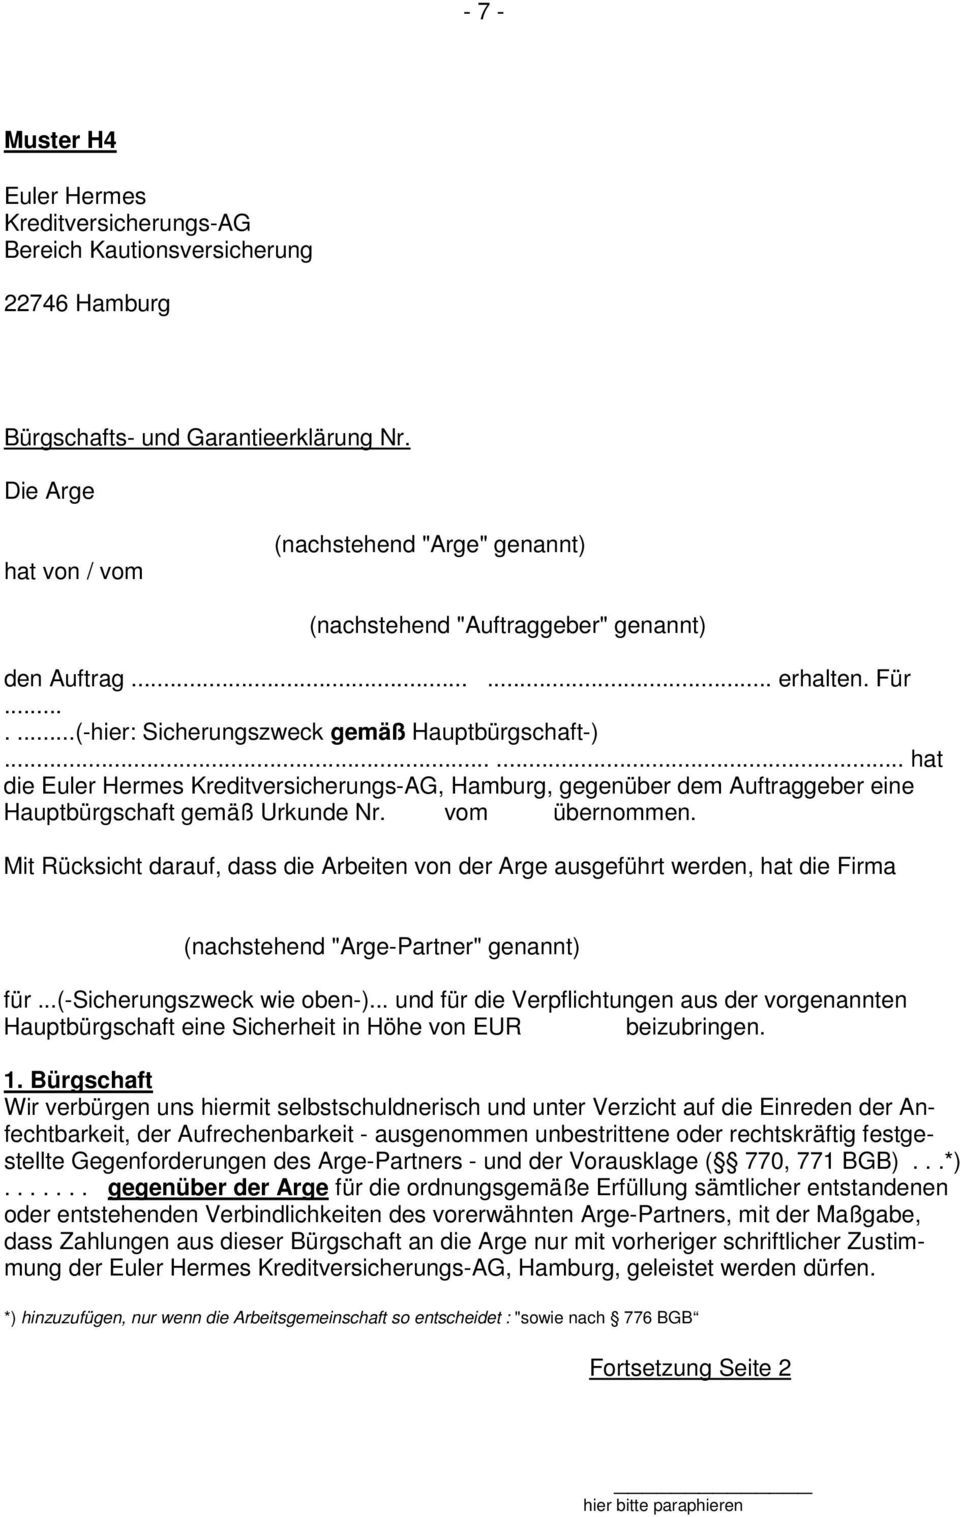 ..... hat die Euler Hermes Kreditversicherungs-AG, Hamburg, gegenüber dem Auftraggeber eine Hauptbürgschaft gemäß Urkunde Nr. vom übernommen.